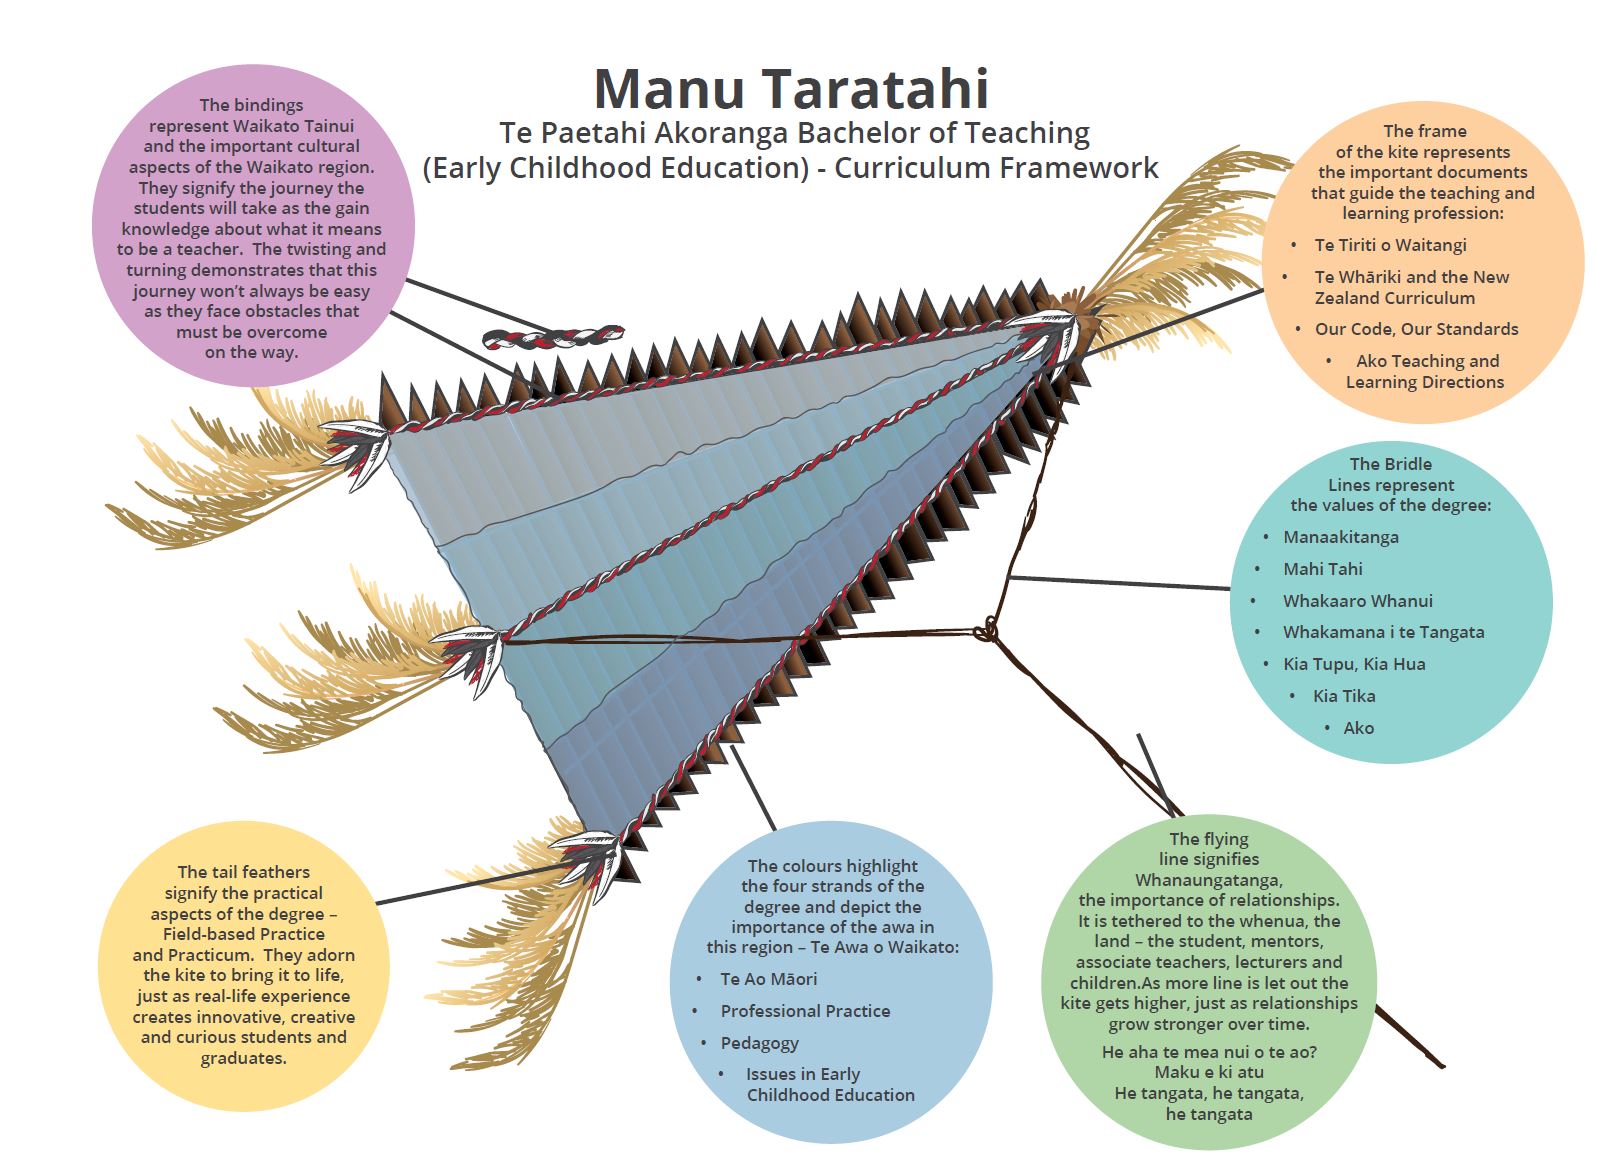 The framework for Te Paetahi Akoranga Bachelor of Teaching at Wintec